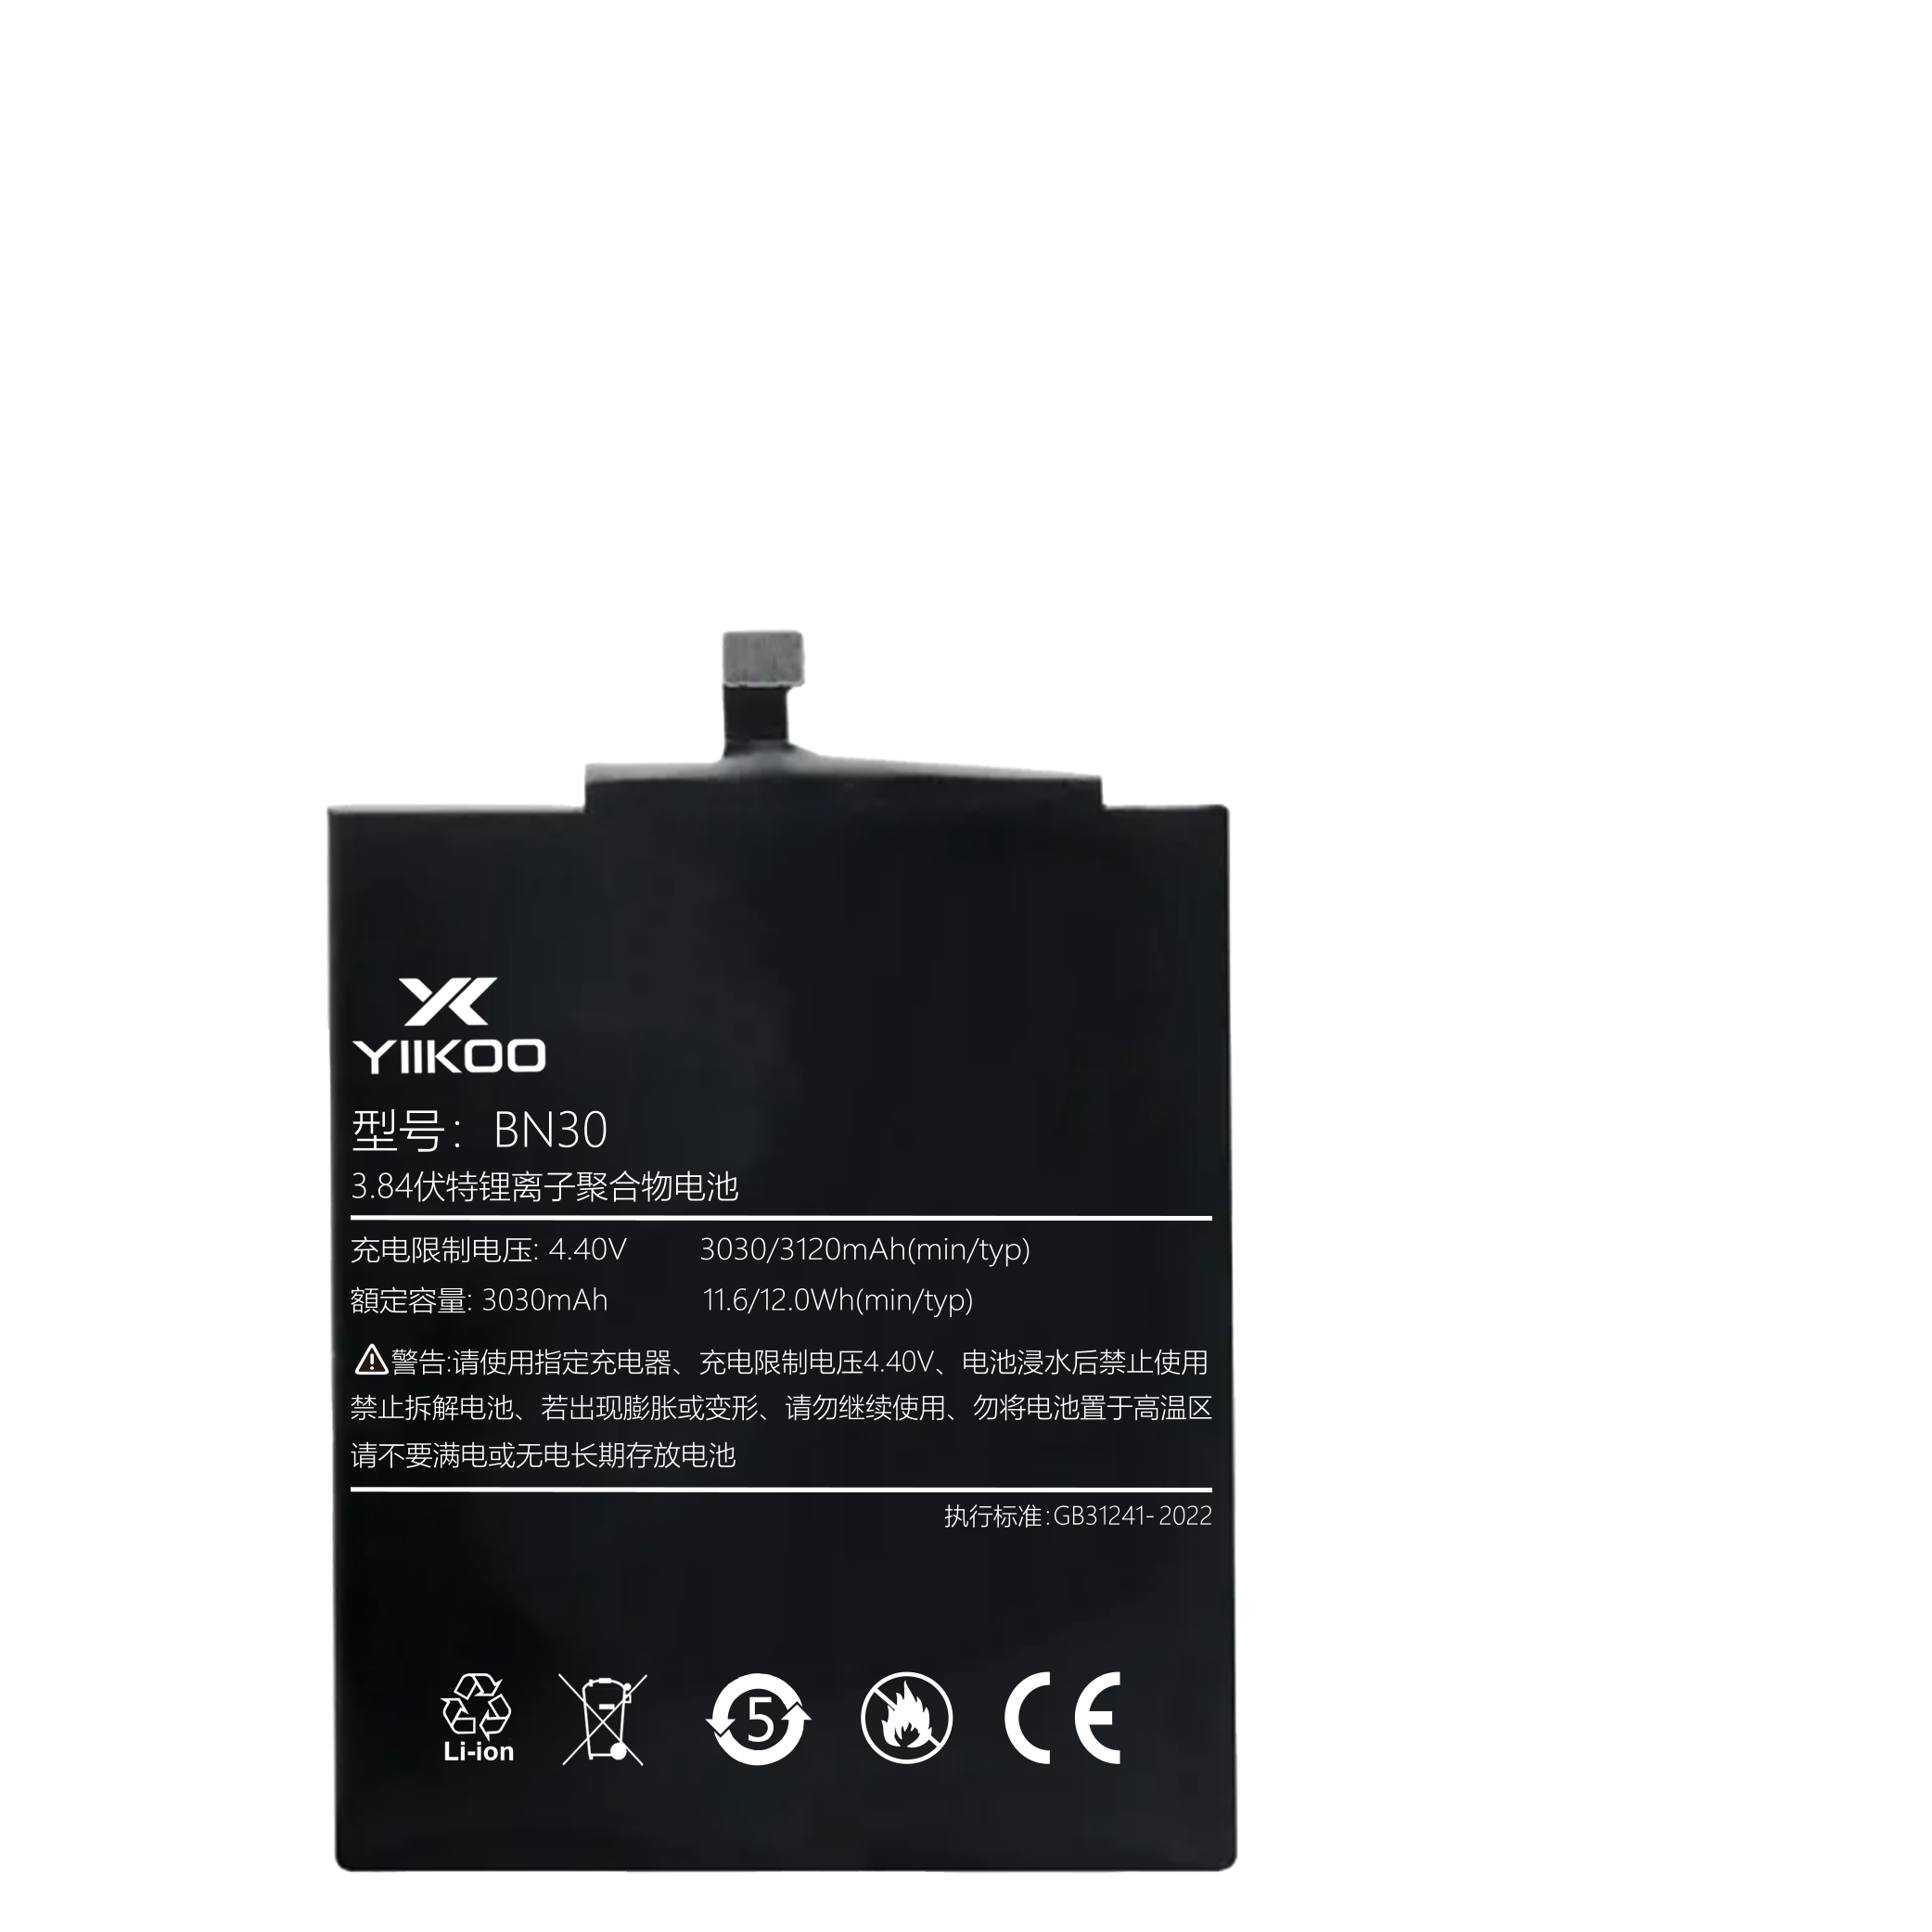 Hongmi 4A Battery (3030mAh) BN30